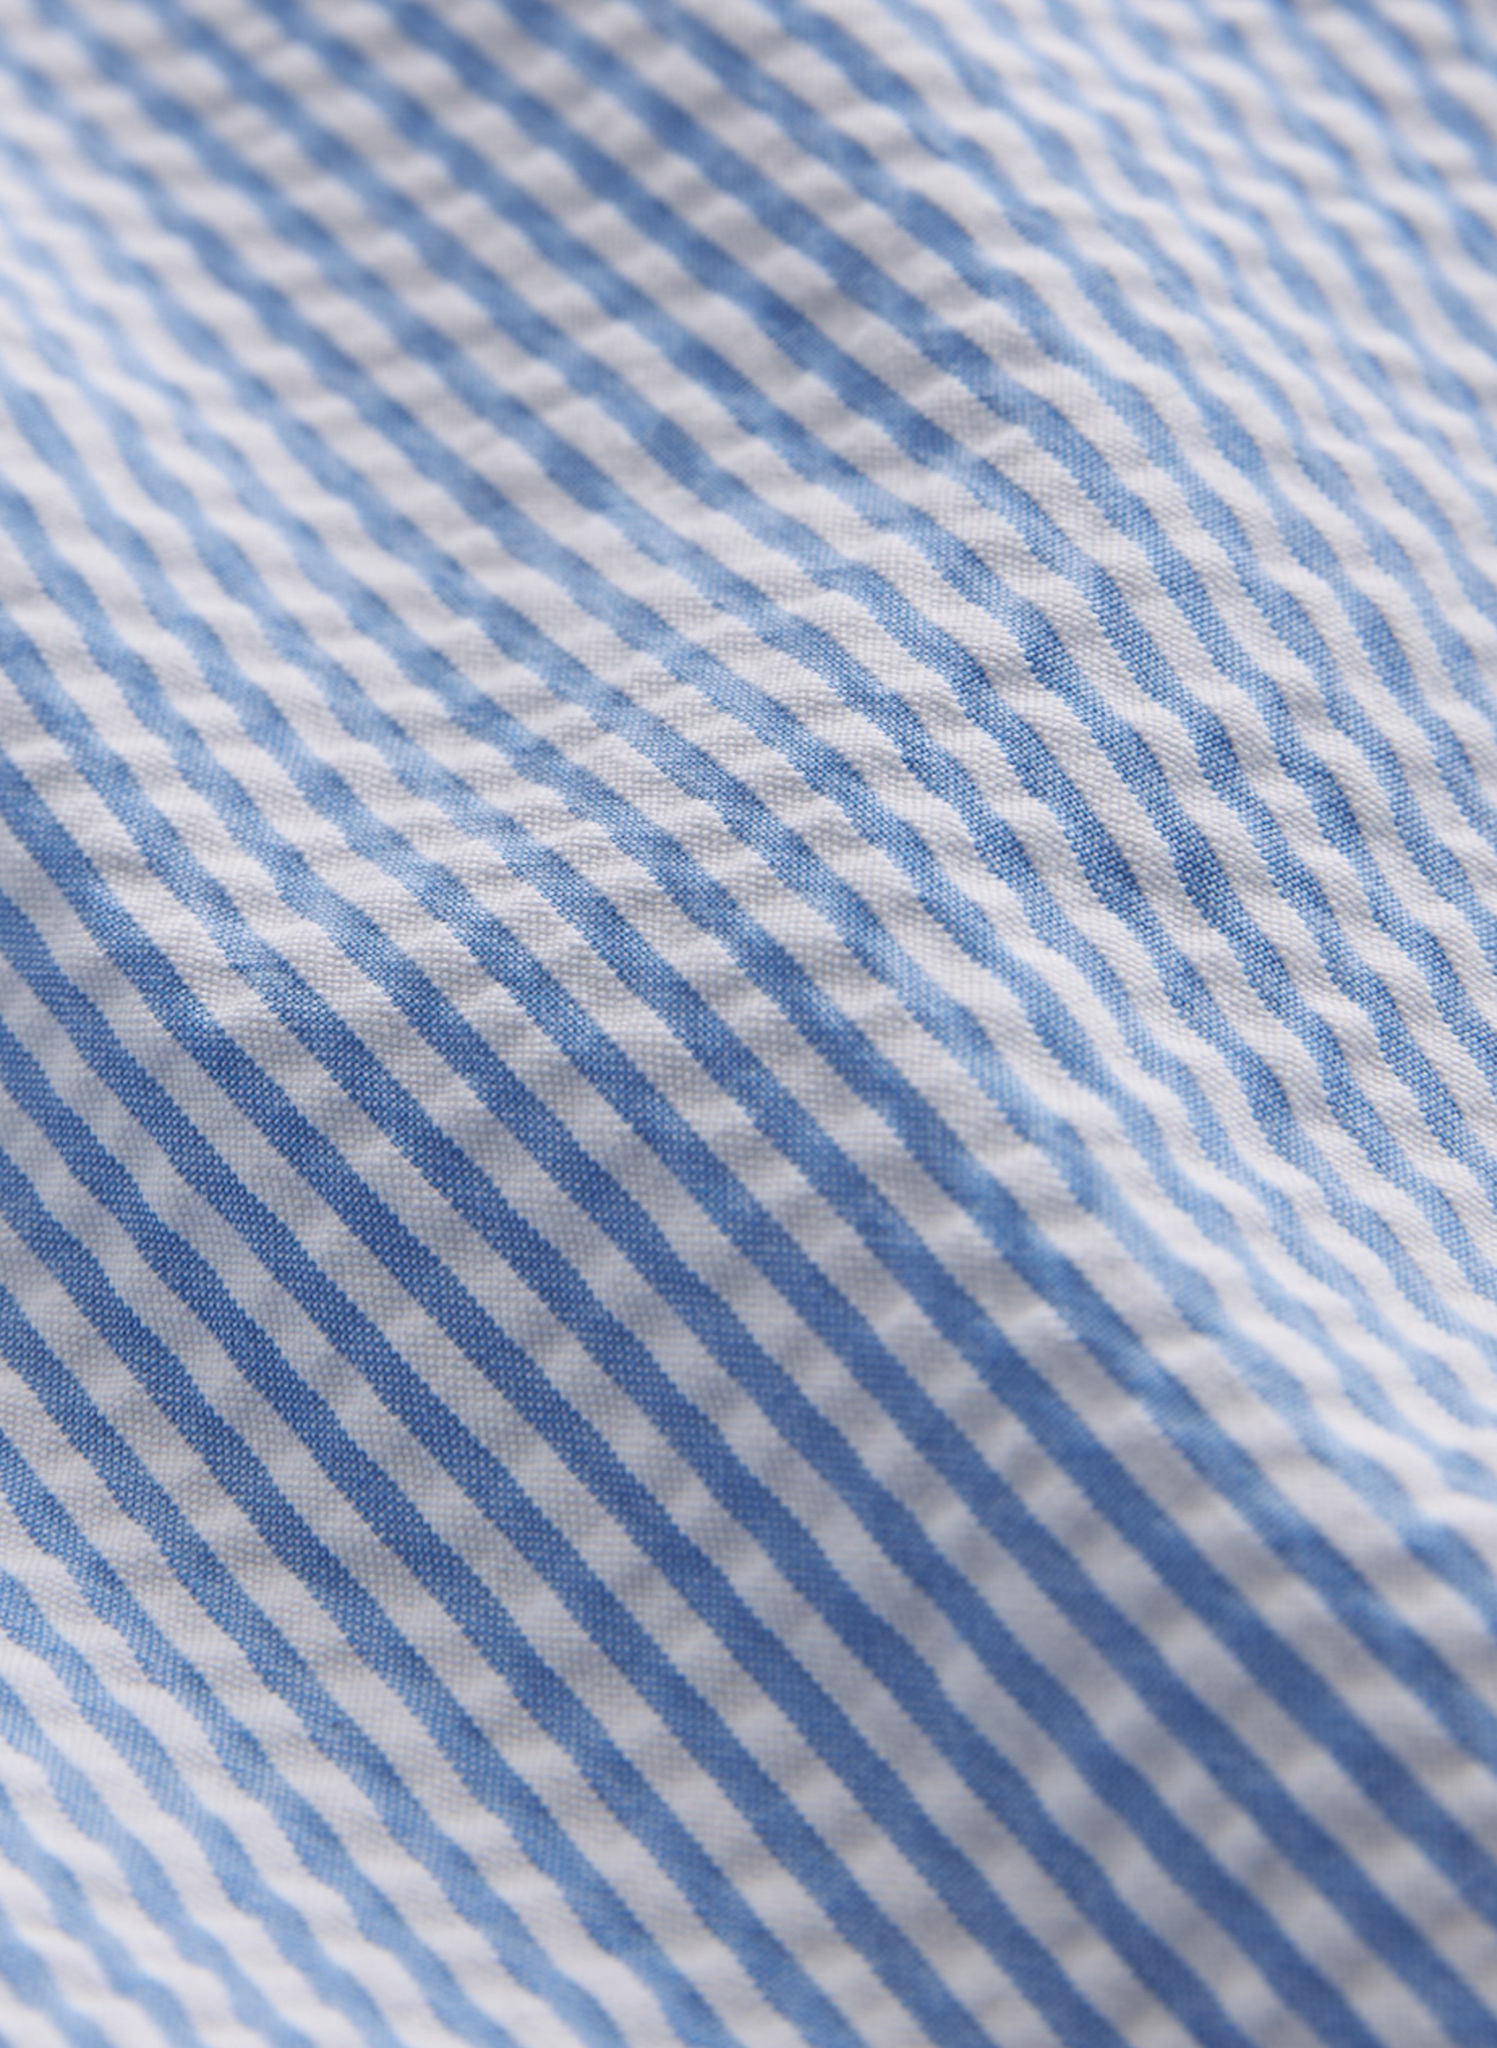 Morris - Seersucker Shirt, Light Blue